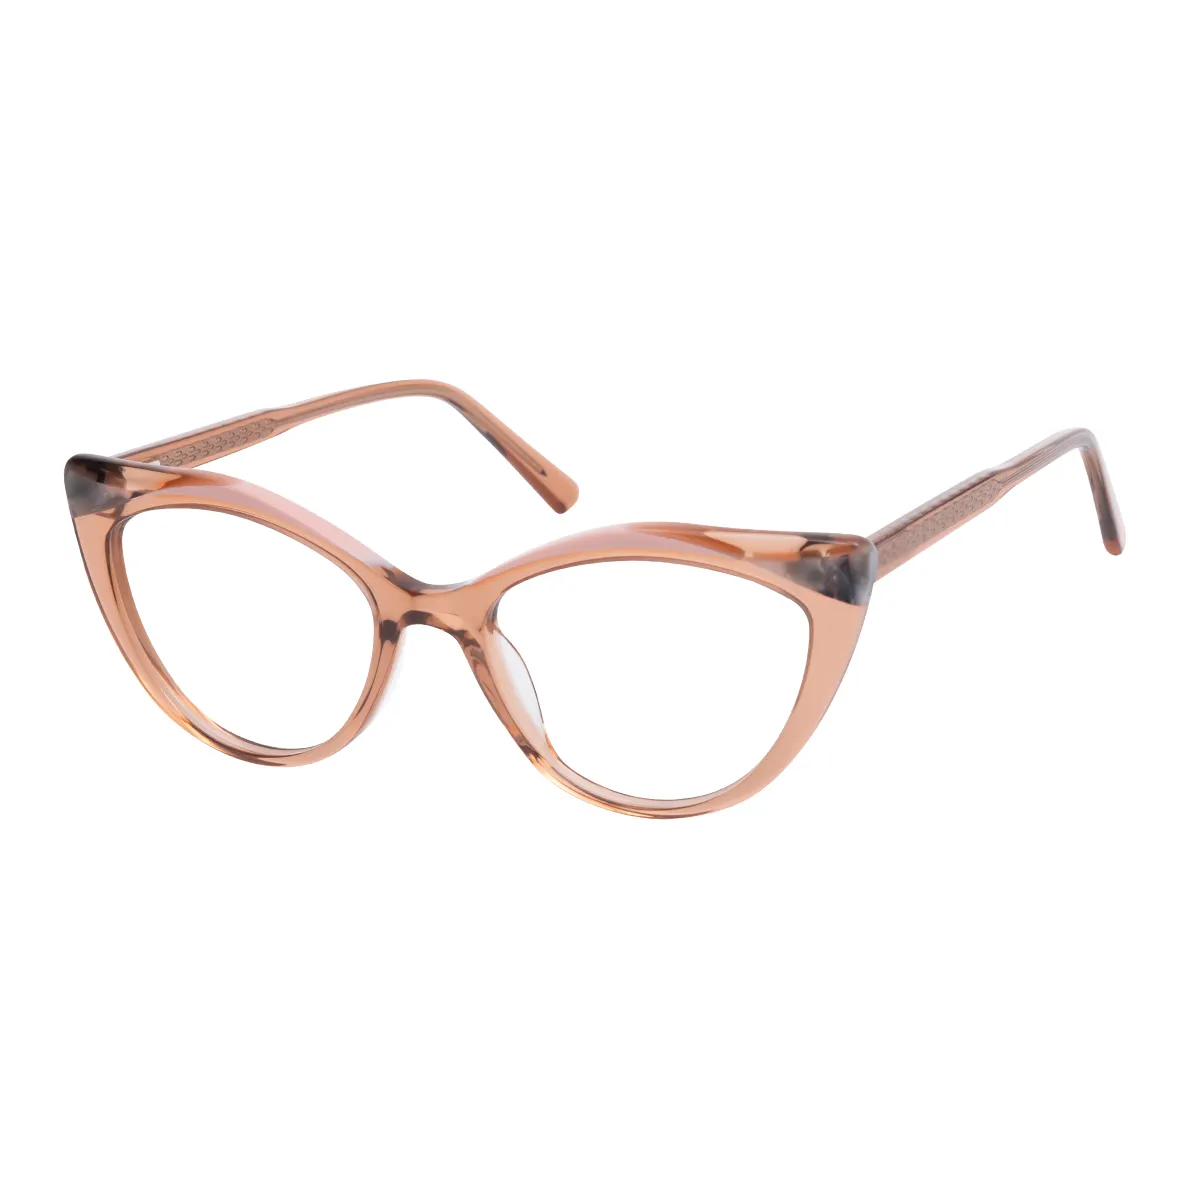 Evajane - Cat-eye Brown Glasses for Women